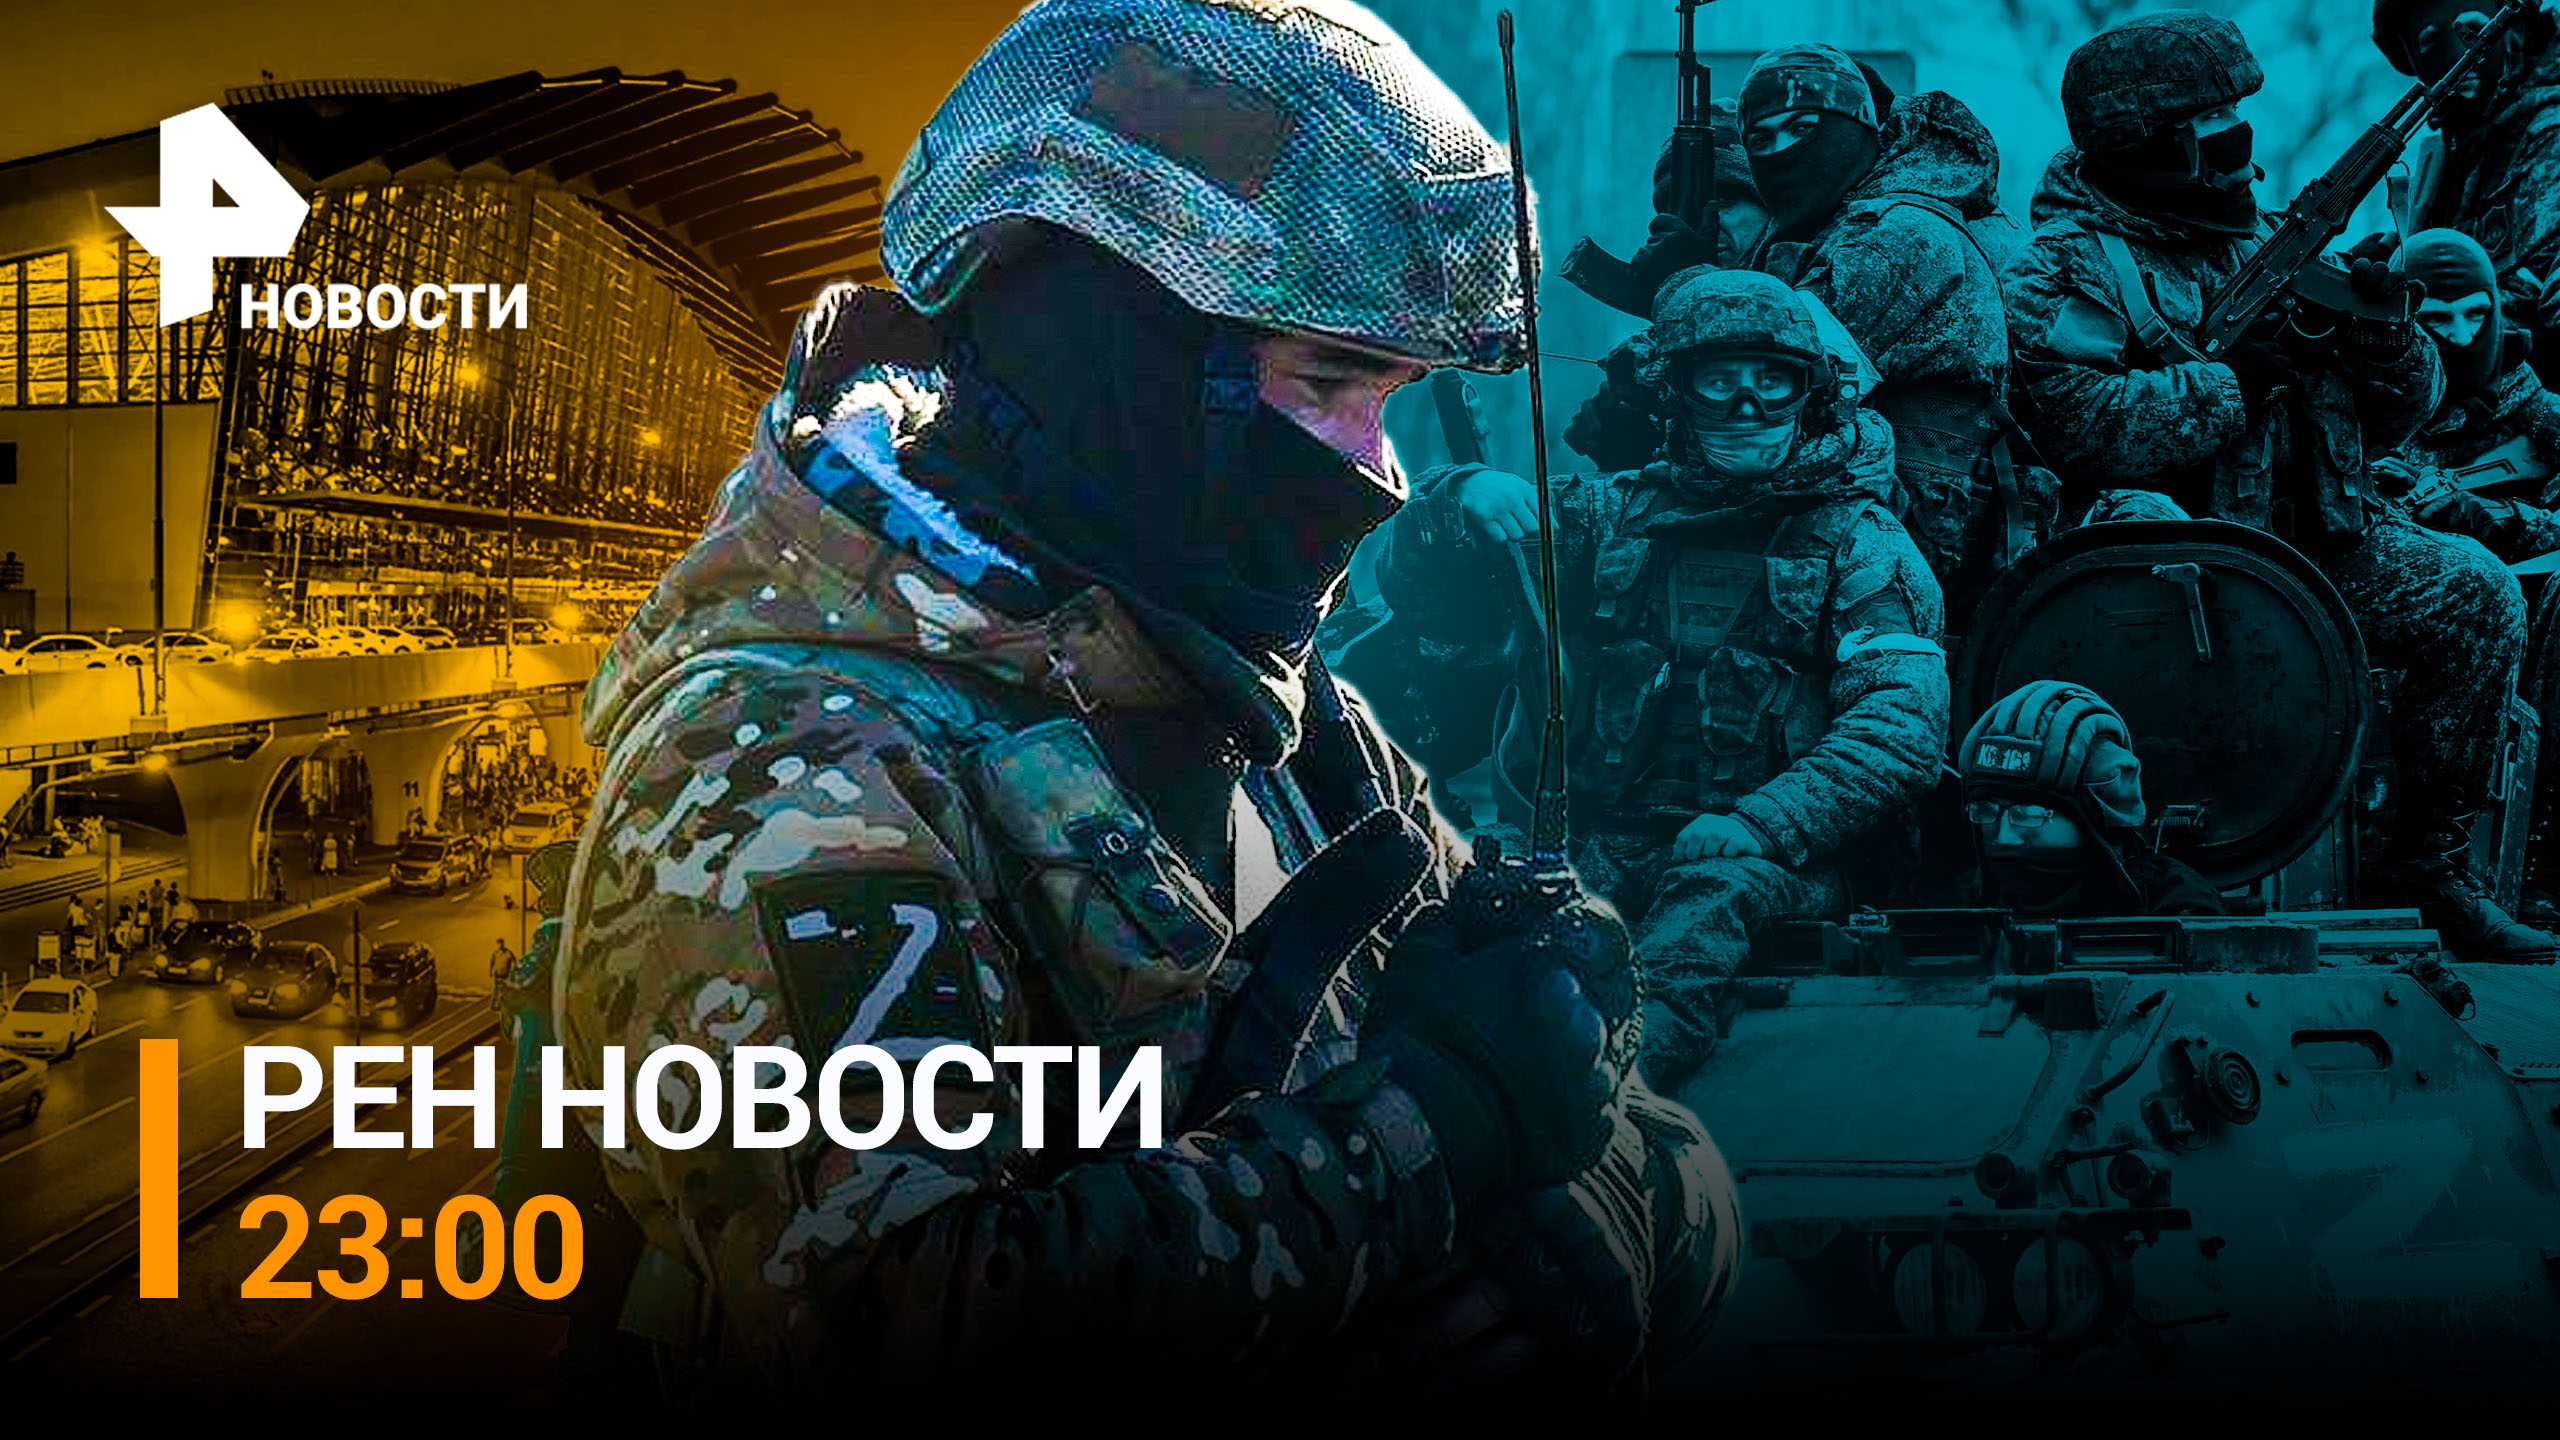 Как ВСУ засыпали Донецк ракетами / РЕН ТВ НОВОСТИ 23:00 от 15,12,22